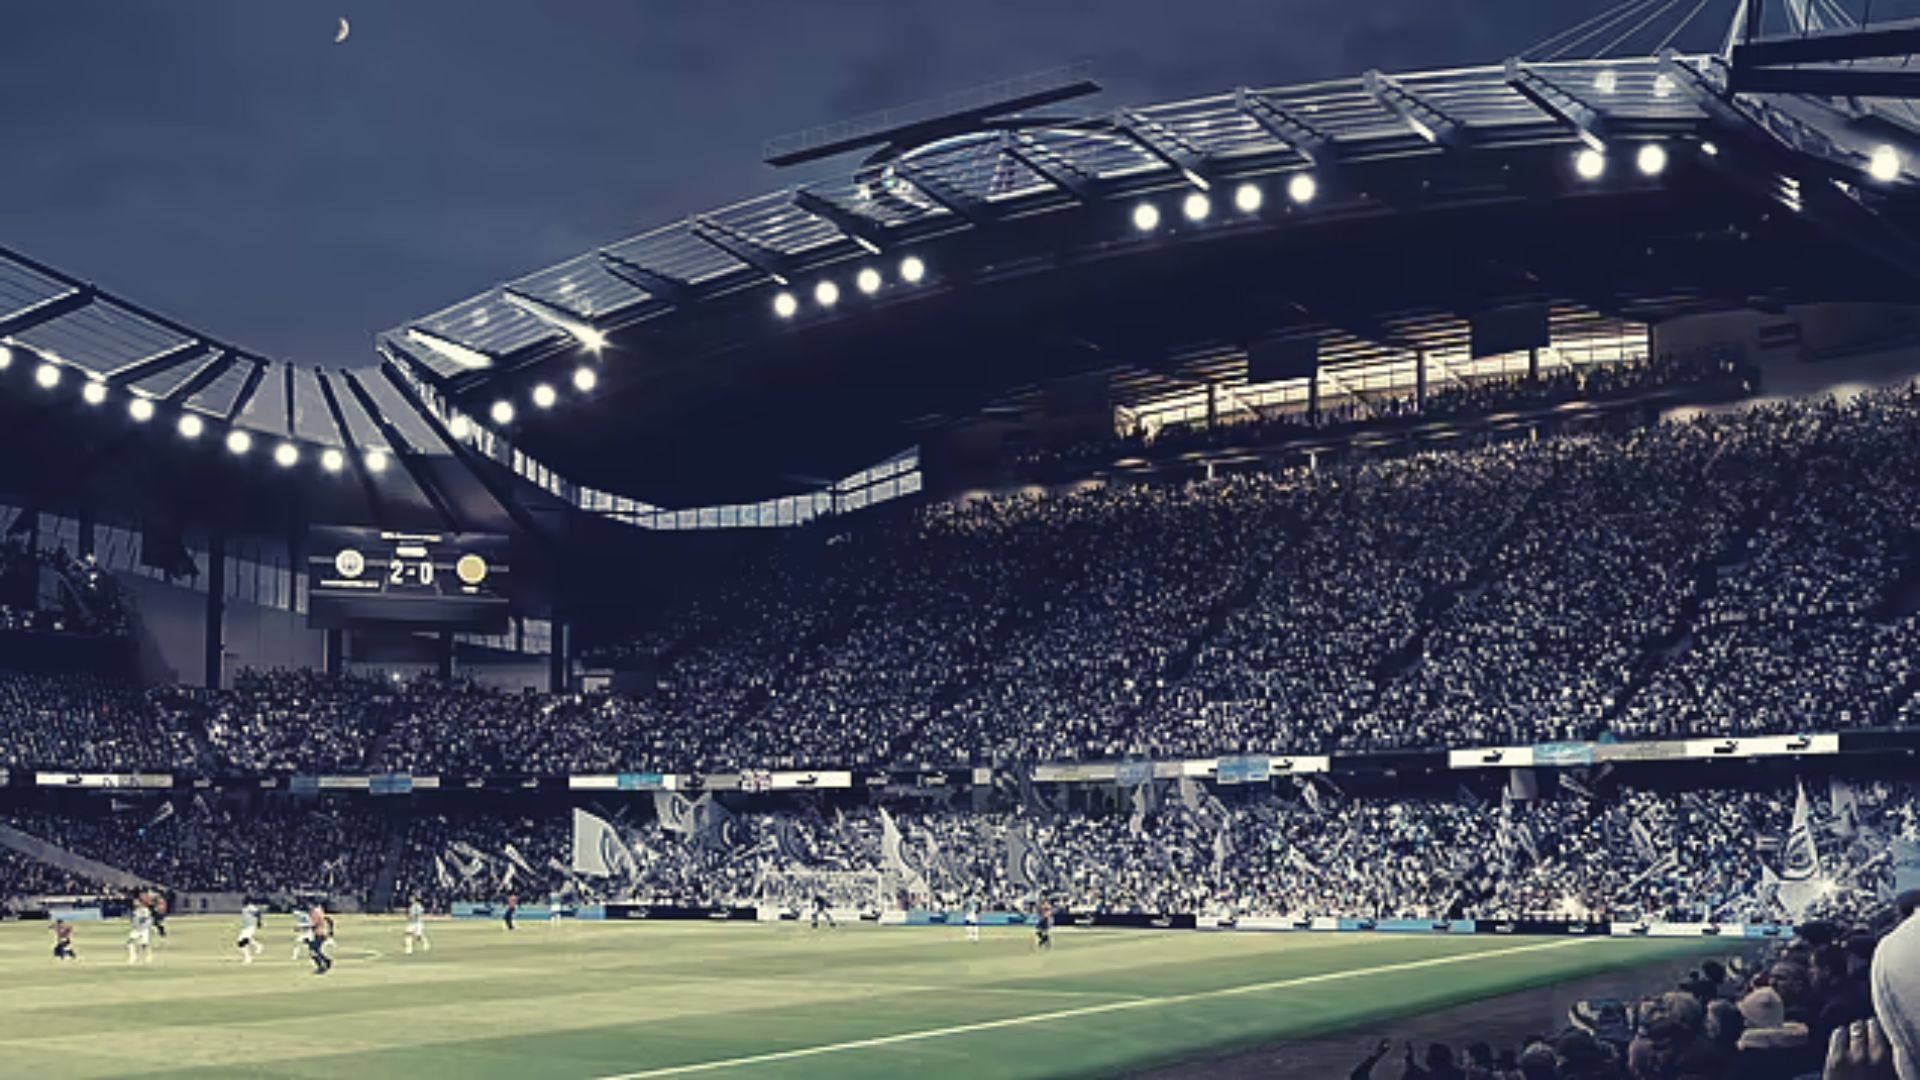 Manchester City sẽ xây dựng sân Etihad trong siêu vũ trụ ảo metaverse